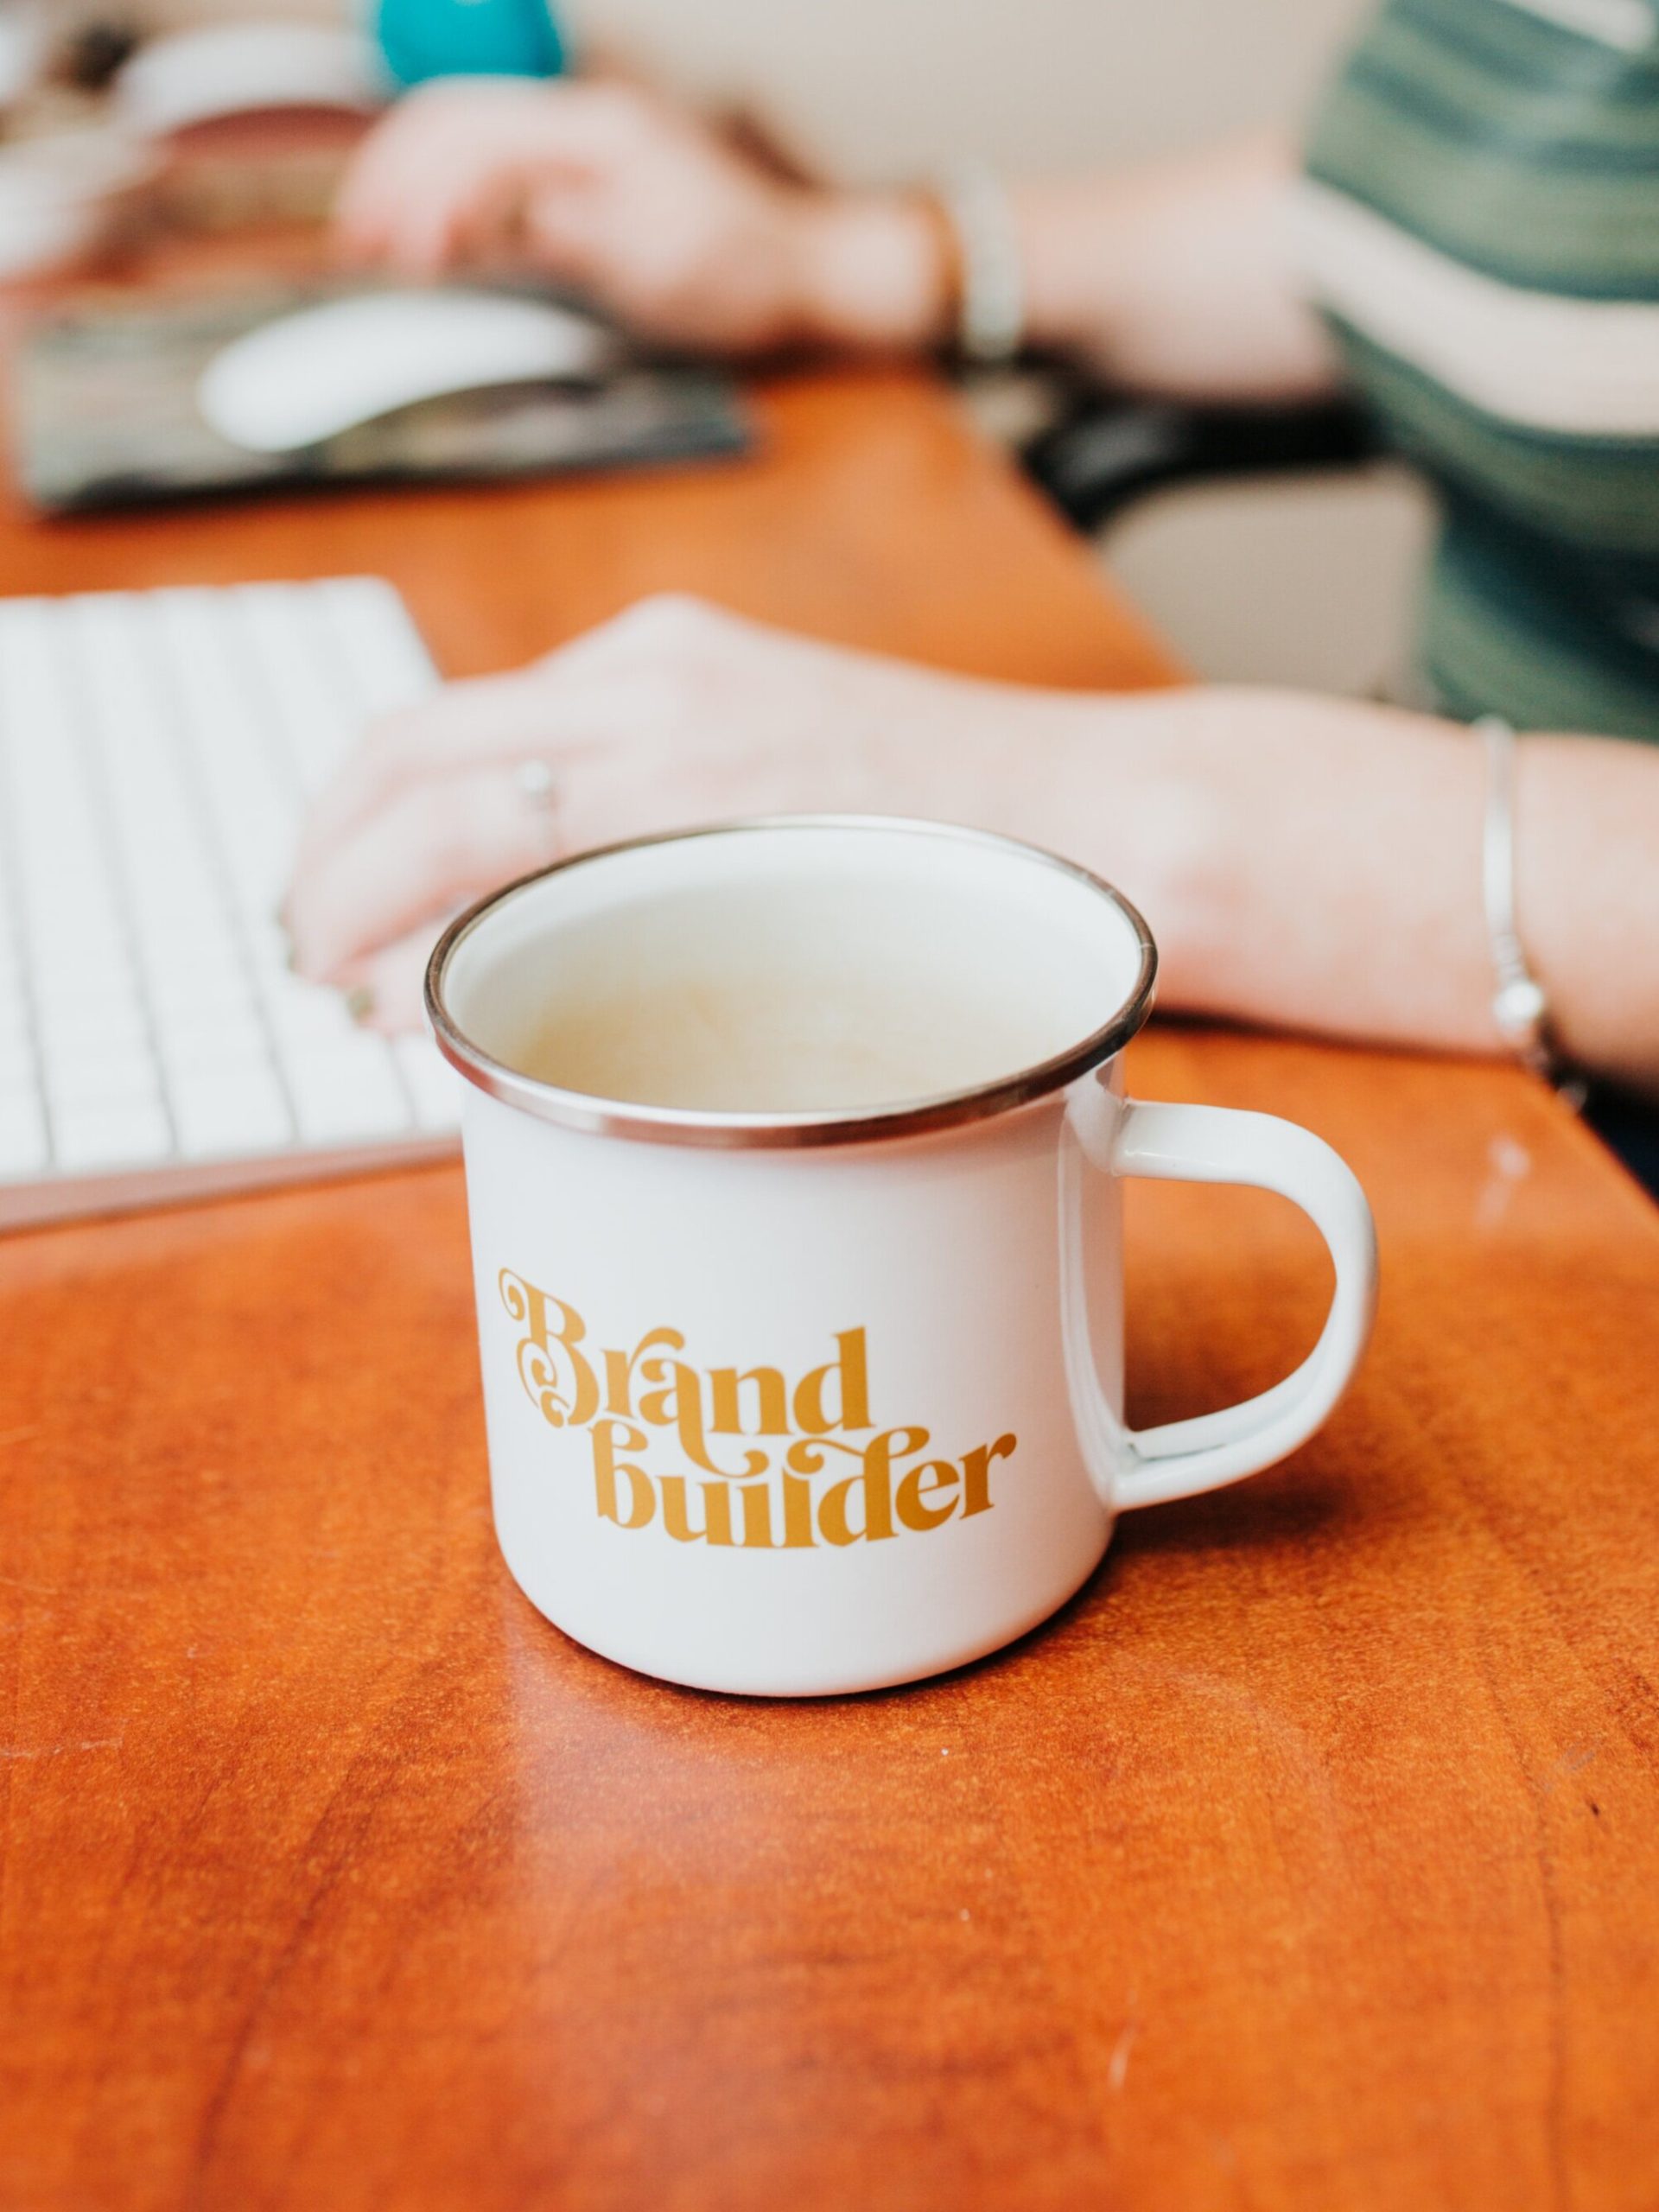 Brand Builder Enamel Mug